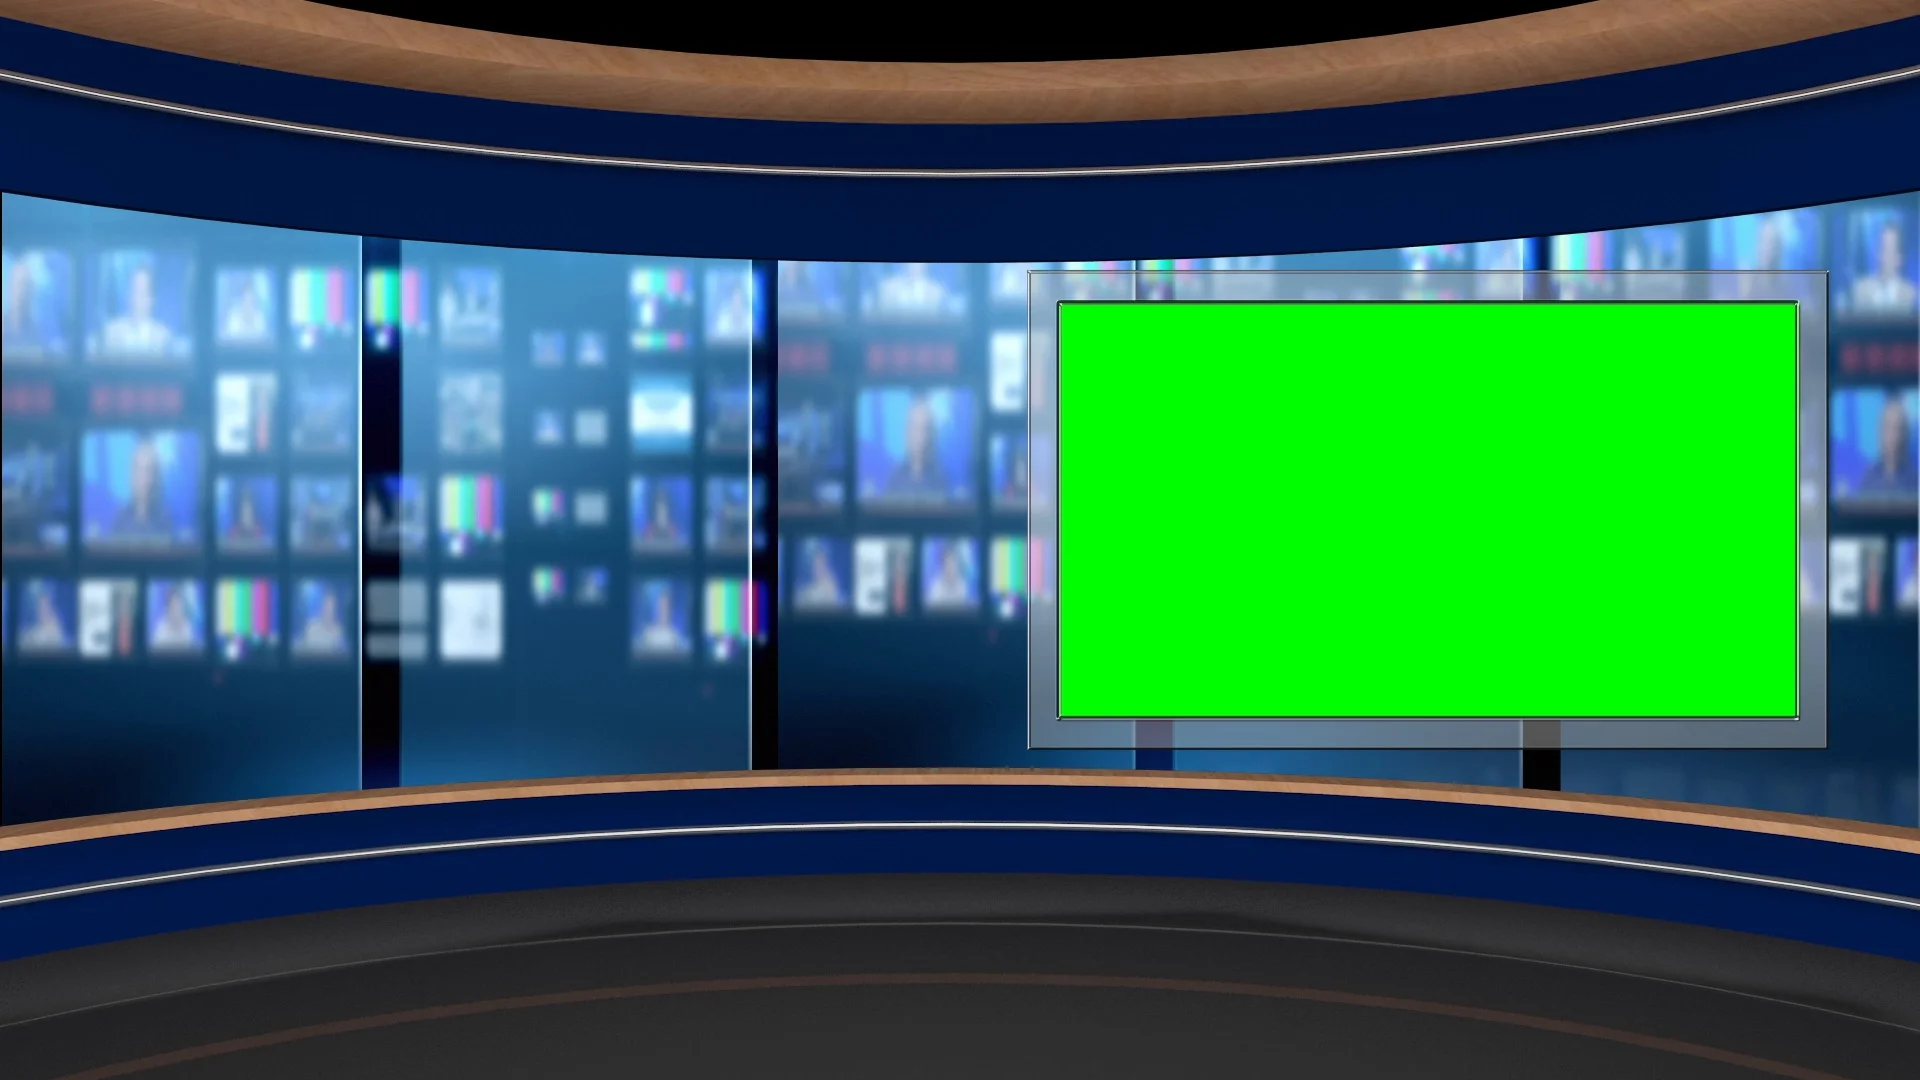 Bạn có bao giờ muốn trải nghiệm công việc truyền hình? Hãy đến với phòng thu ảo truyền hình màu xanh lá cây. Với màn hình xanh và các thiết bị công nghệ chuyên nghiệp, bạn sẽ được trải nghiệm những cảnh quay chân thực nhất. Hãy xem hình ảnh để cảm nhận sự ấn tượng đó nhé!